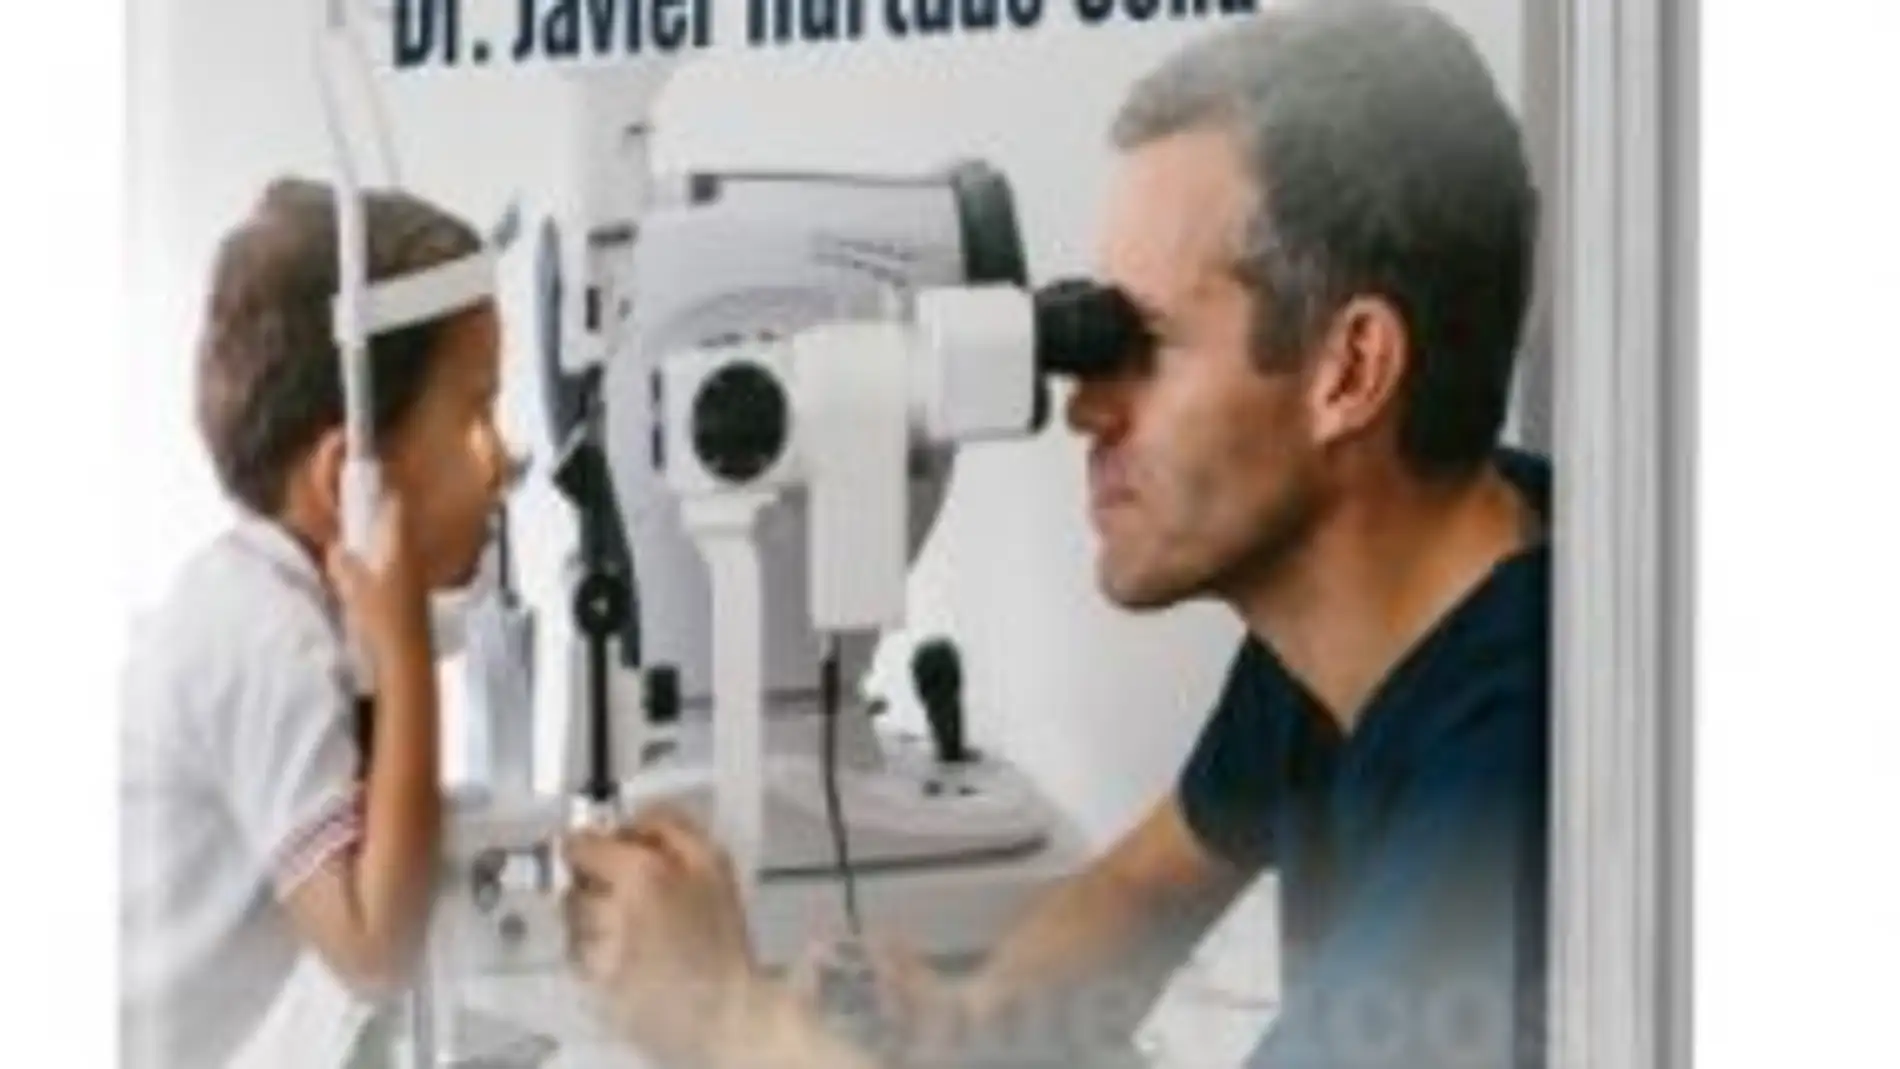 El oftalmólogo Javier Hurtado publica ‘Soluciona tu estrabismo’ y "El estrabismo infantil tiene cura"